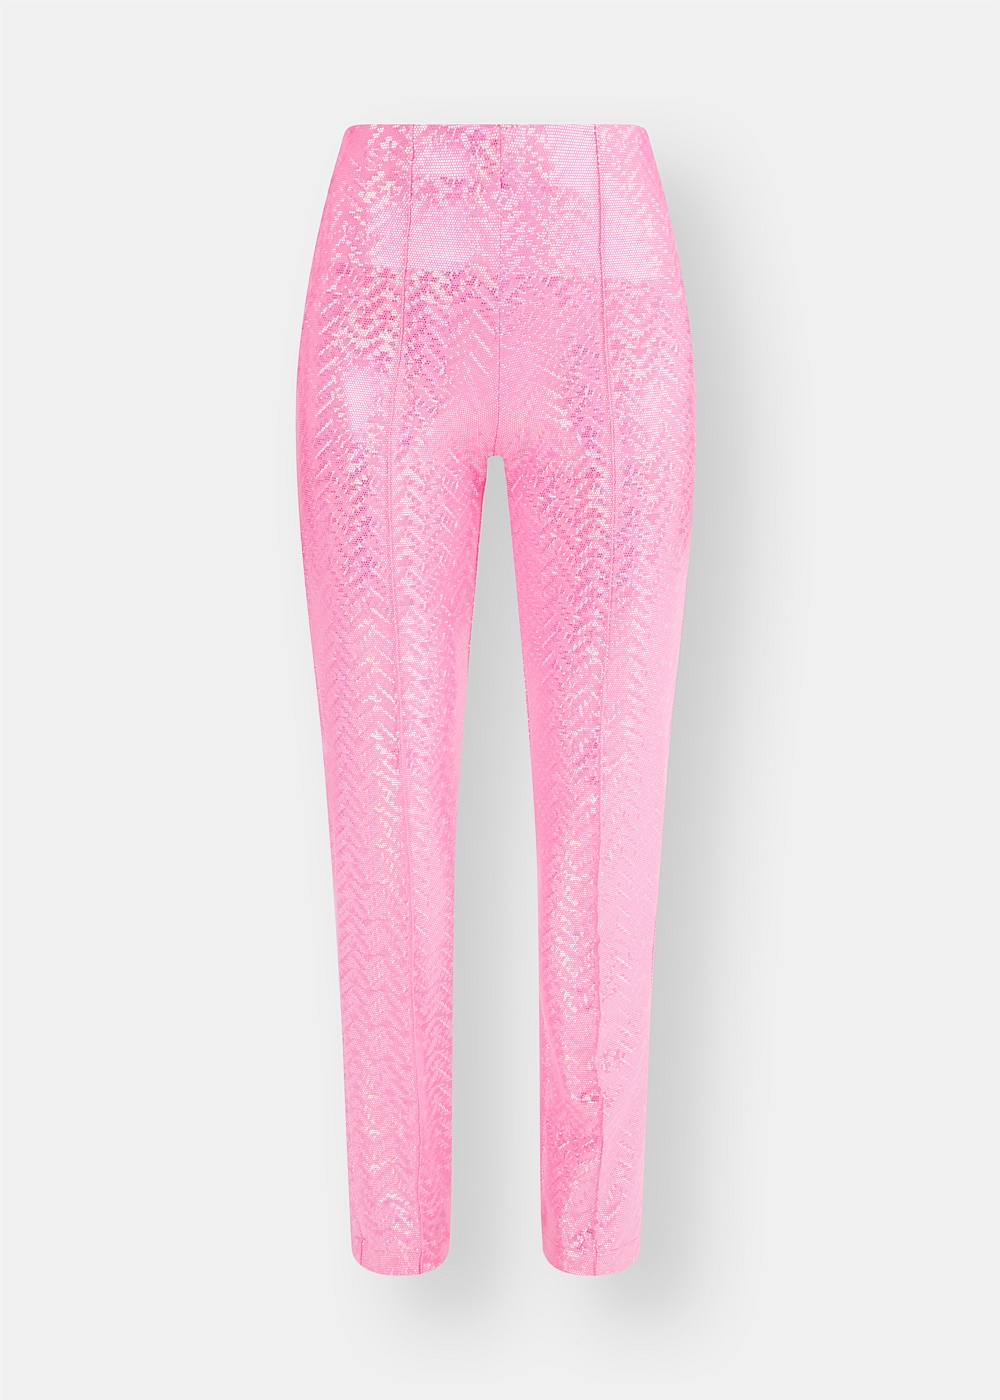 Lissi Pink Shimmer Pants - Harrolds